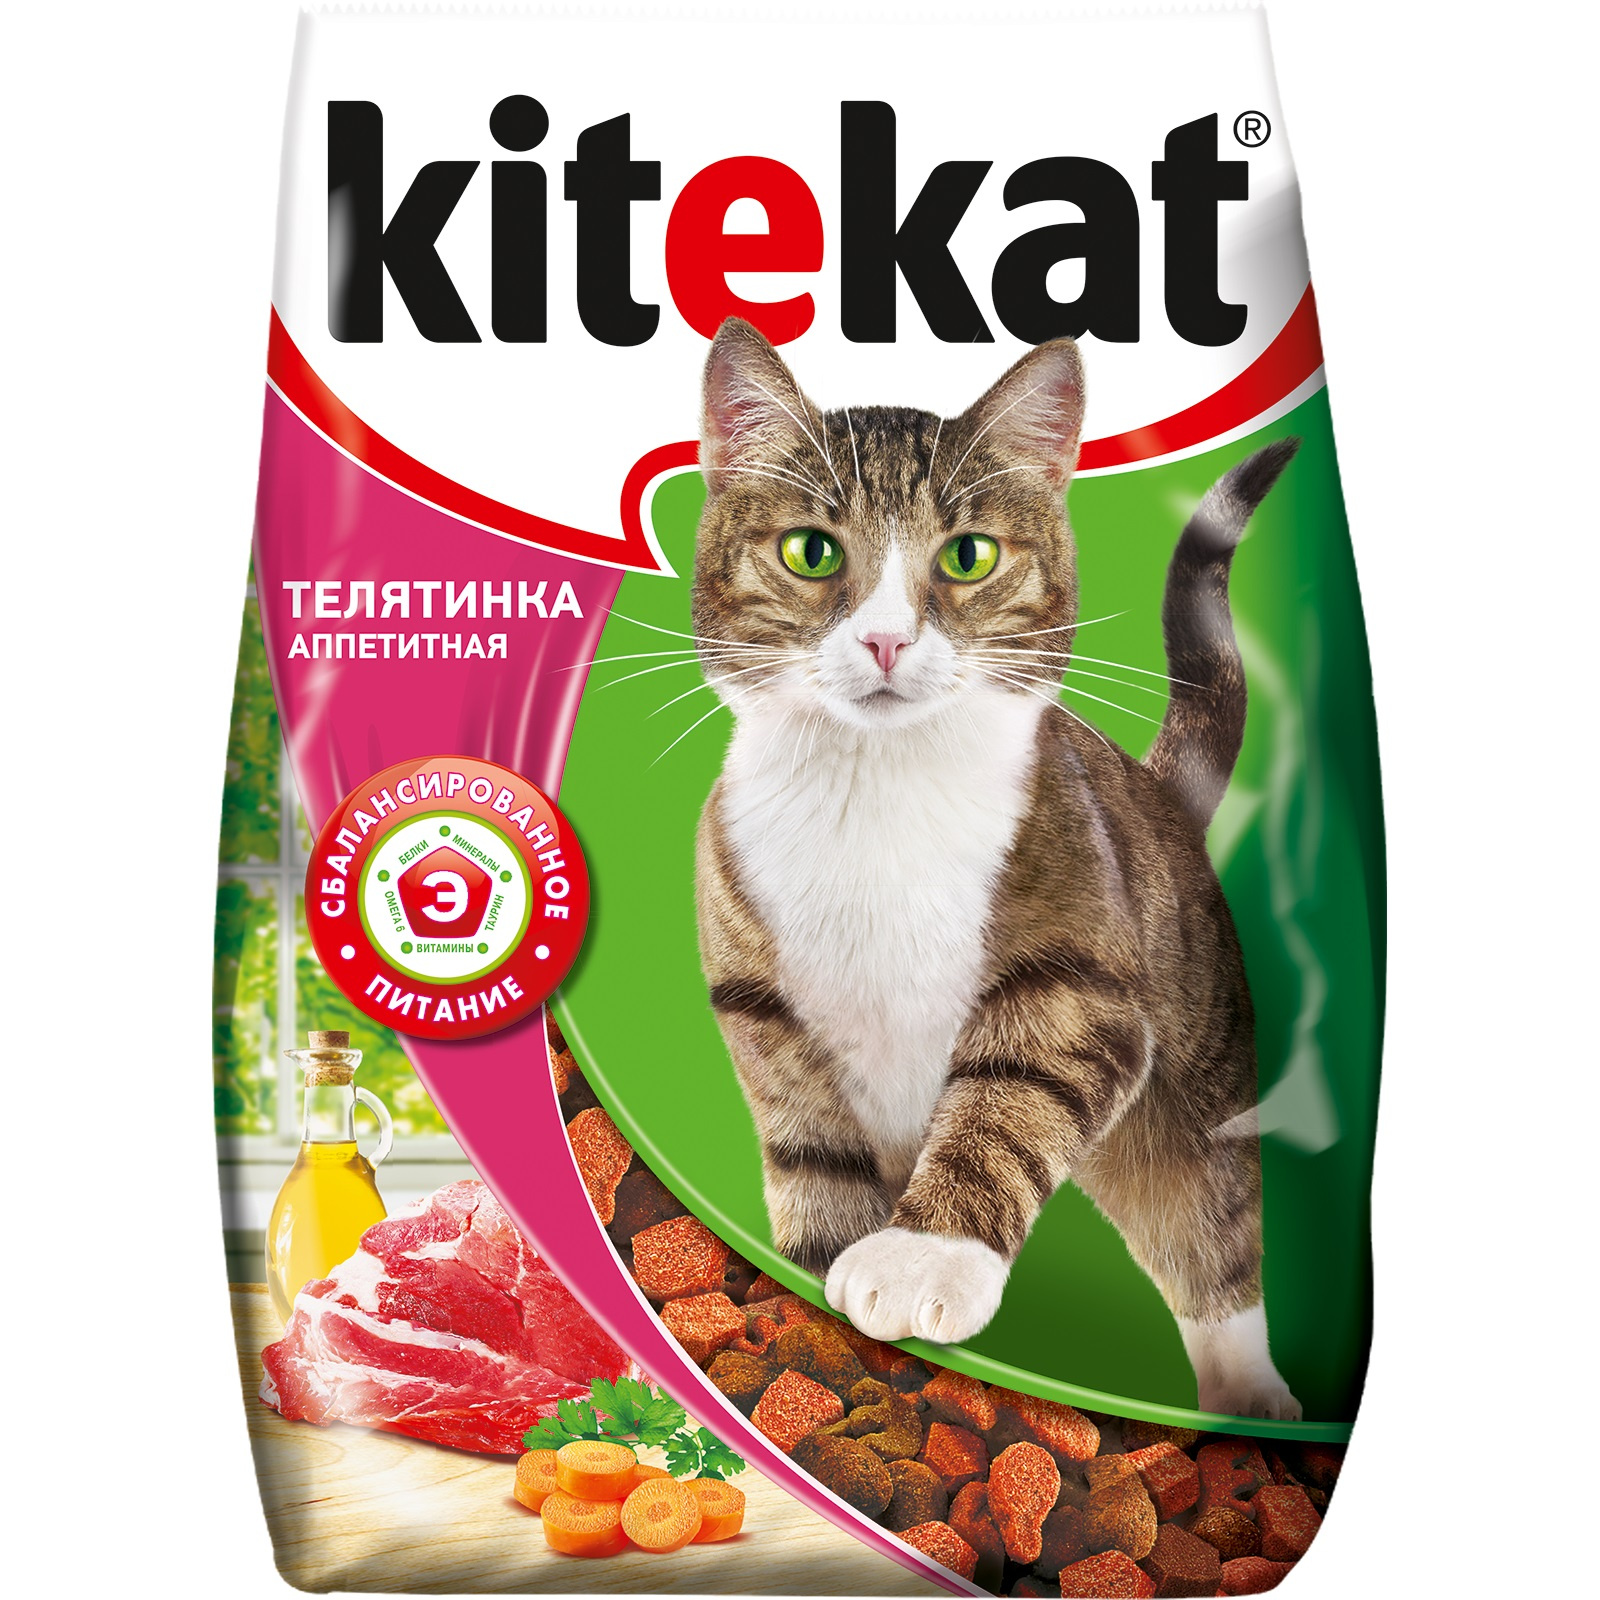 Сухой корм для кошек Kitekat, с аппетитной телятинкой, 0,35кг